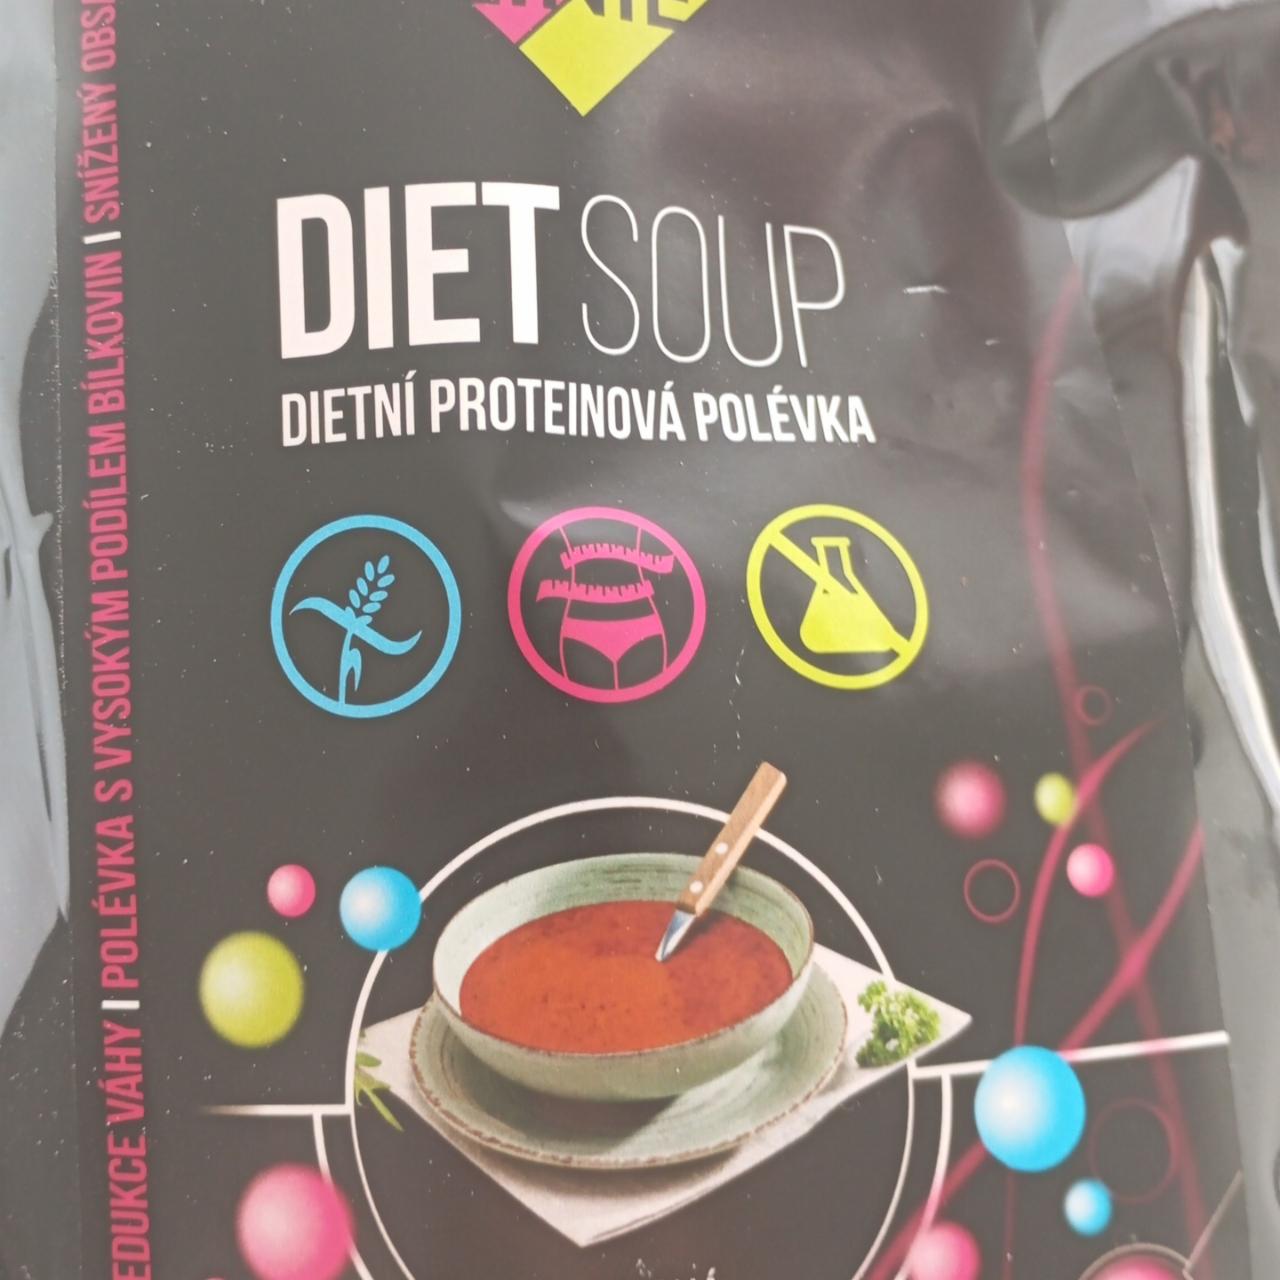 Fotografie - Diet soup dietní proteinová polévka rajská KetoLinie